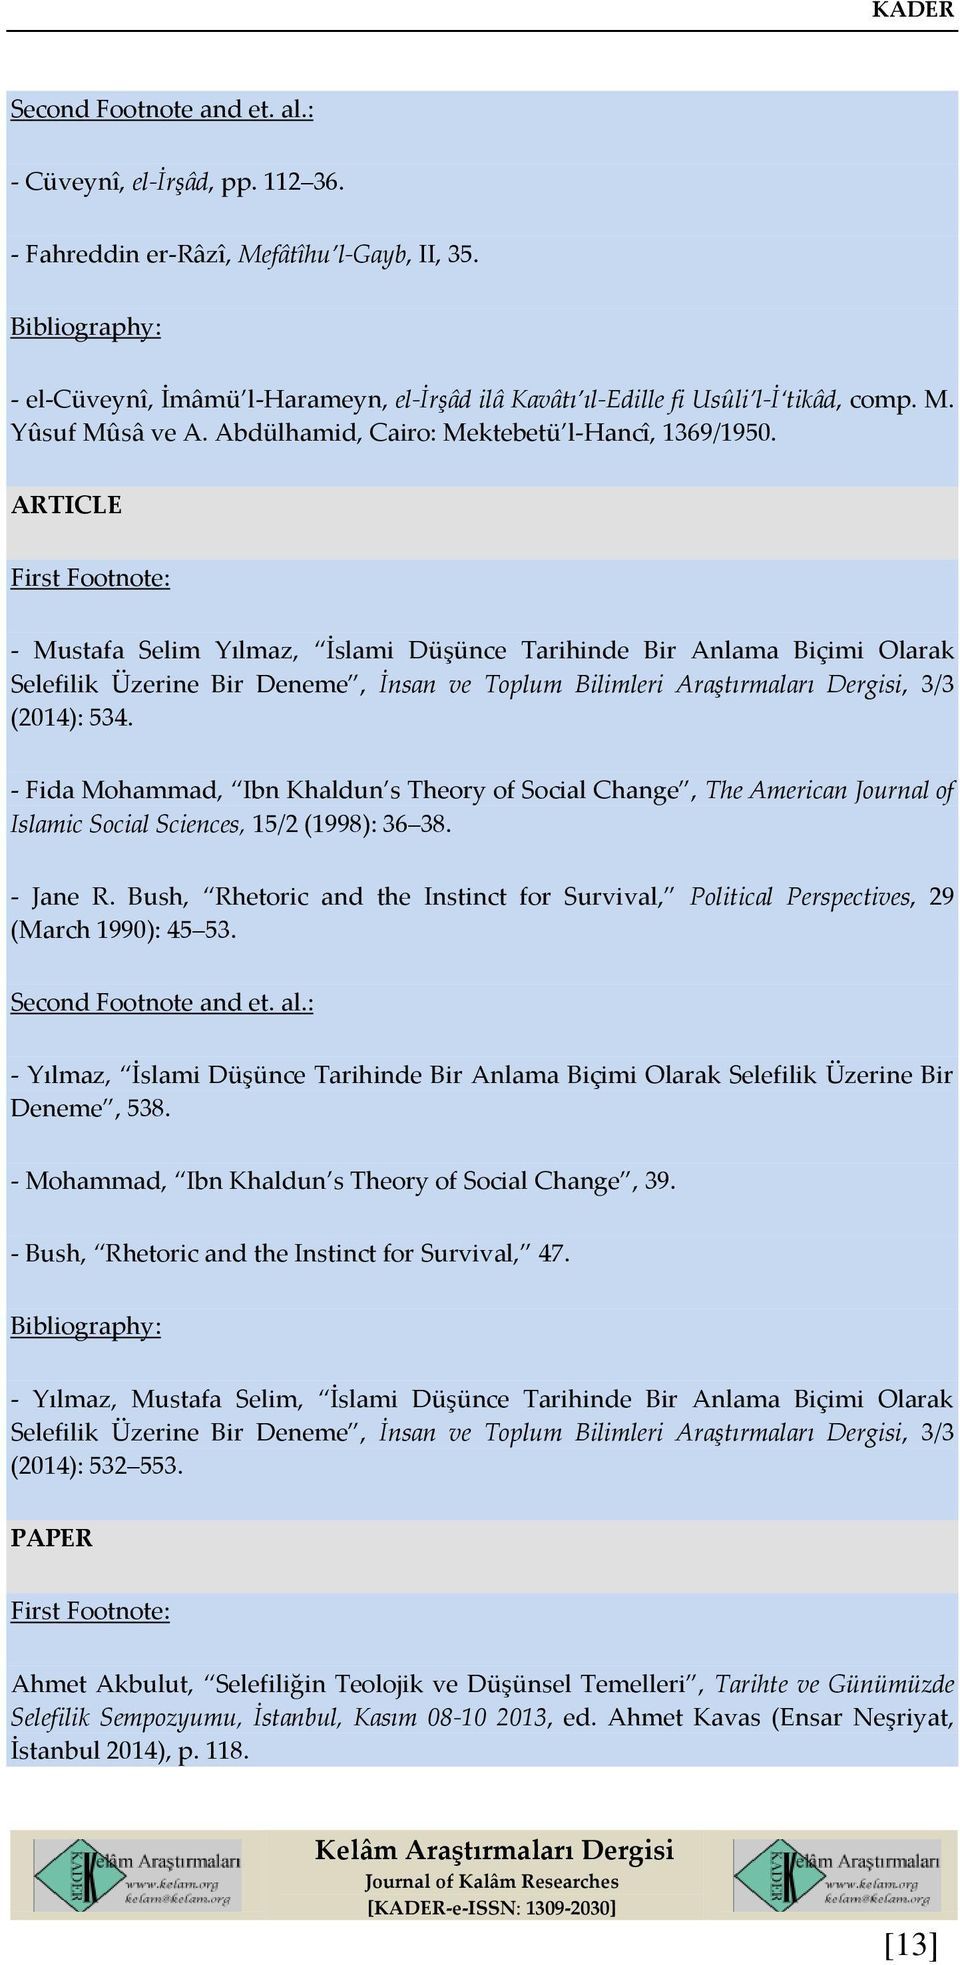 ARTICLE - Mustafa Selim Yılmaz, İslami Düşünce Tarihinde Bir Anlama Biçimi Olarak Selefilik Üzerine Bir Deneme, İnsan ve Toplum Bilimleri Araştırmaları Dergisi, 3/3 (2014): 534.